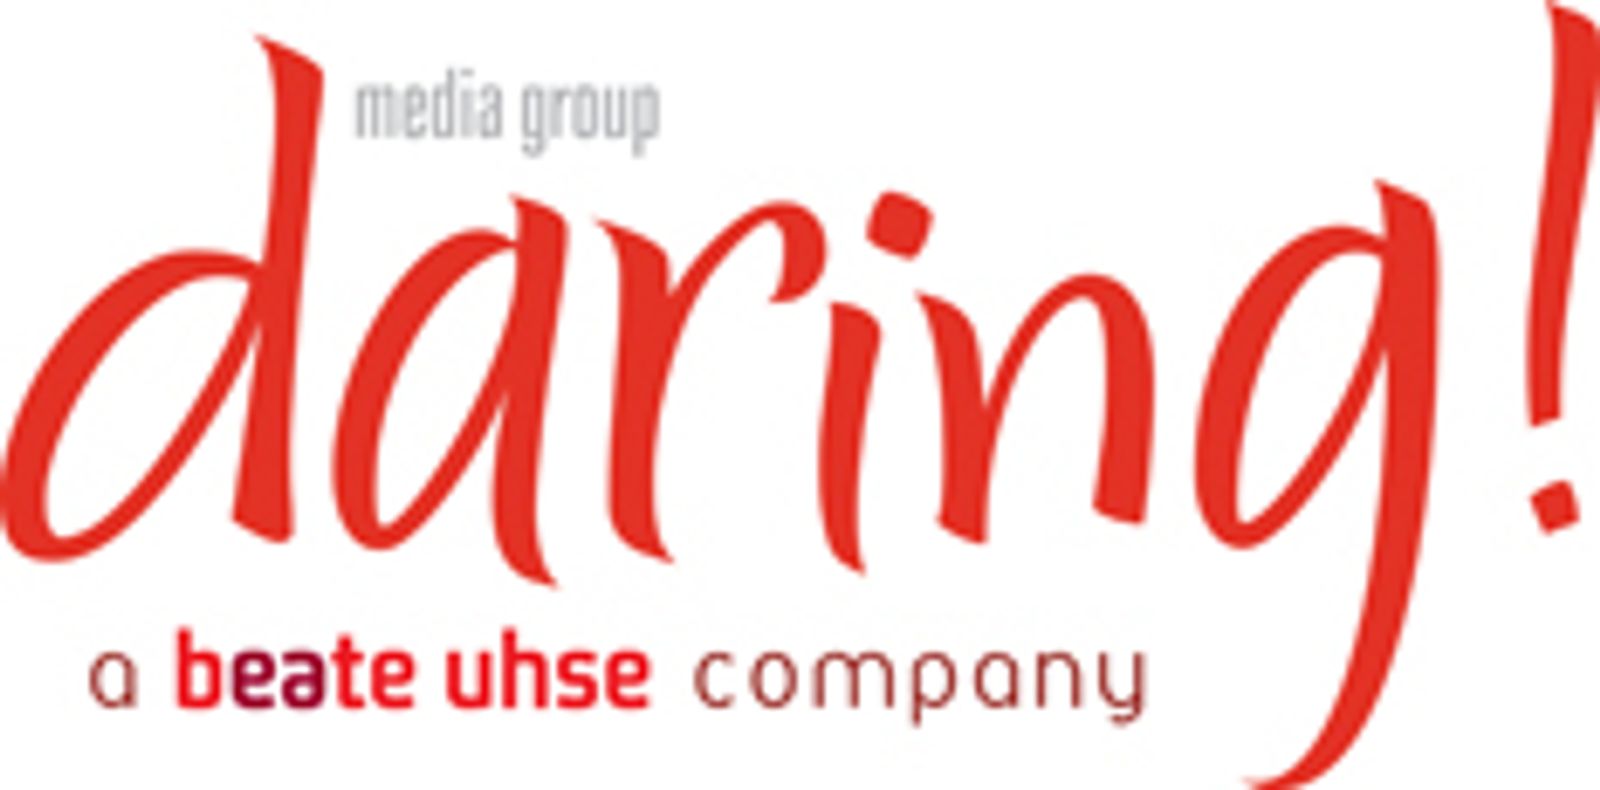 Daring Media Group